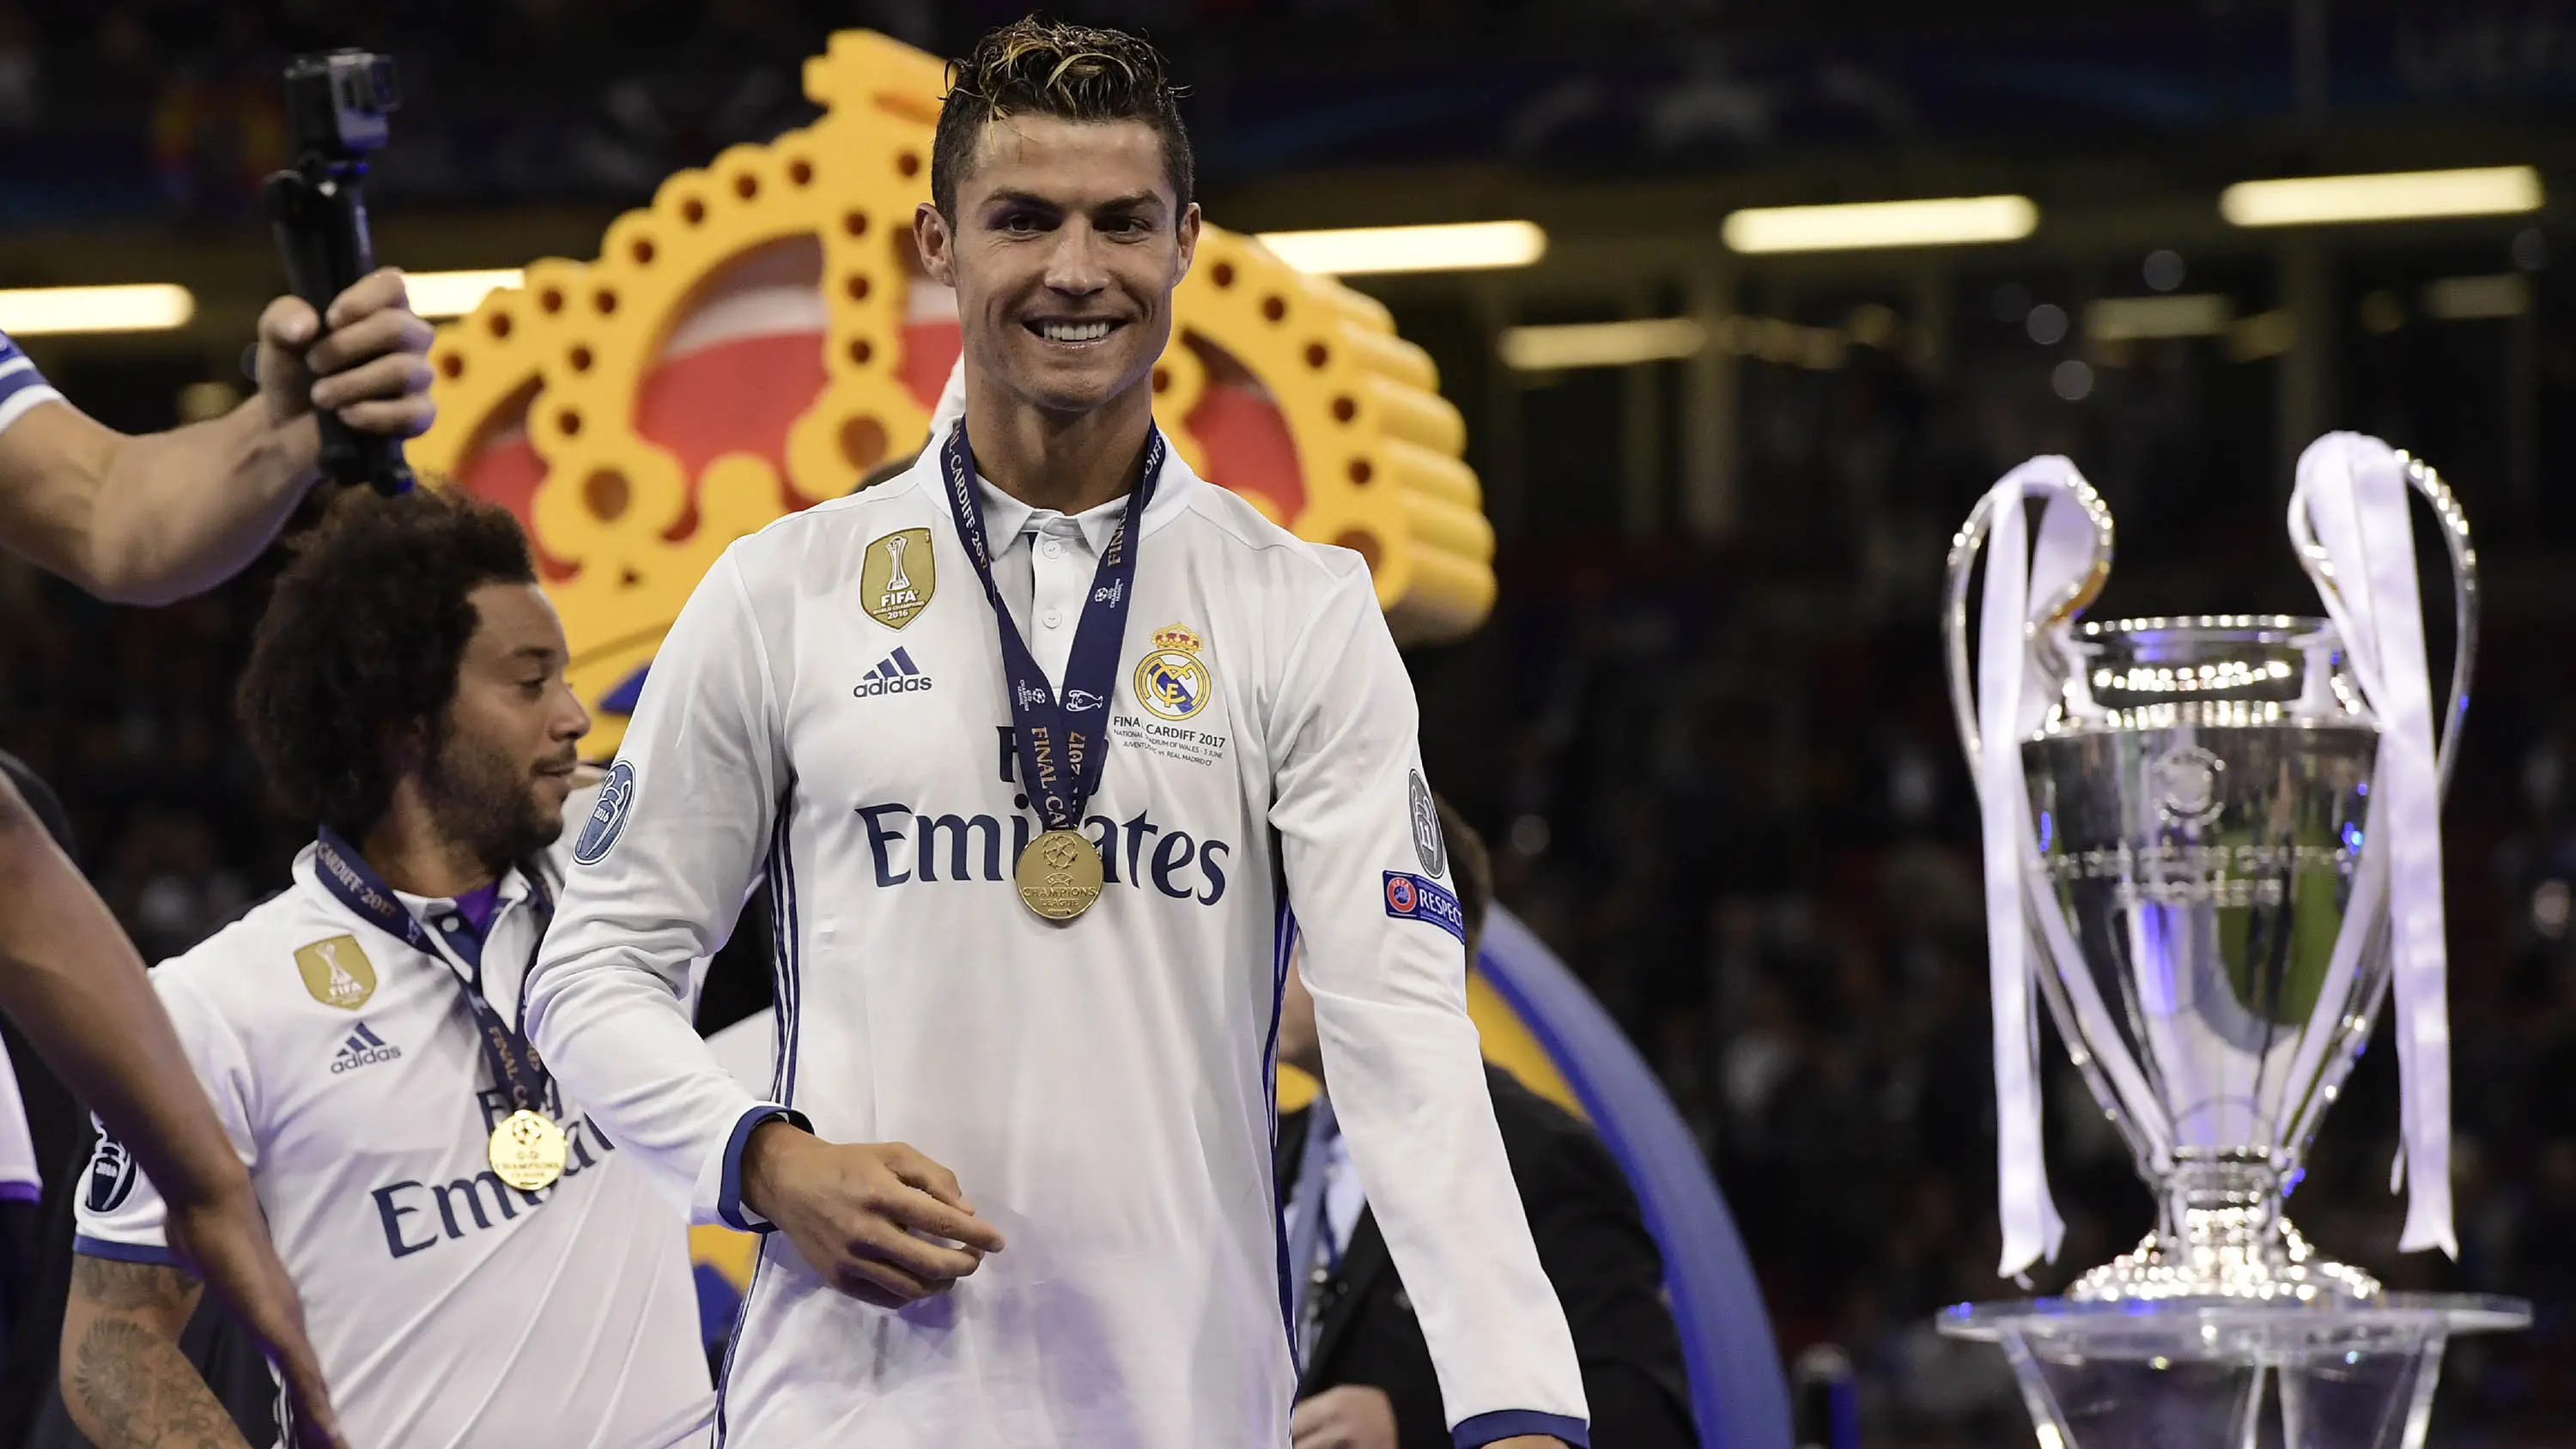 Bintang Real Madrid, Cristiano Ronaldo, merayakan gelar Liga Champions usai mengalahkan Juventus pada laga final di Stadion Principality, Cardiff, Sabtu (3/6/2017). Madrid berhasil menjadi juara Liga Champions. (AFP/Javier Soriano)